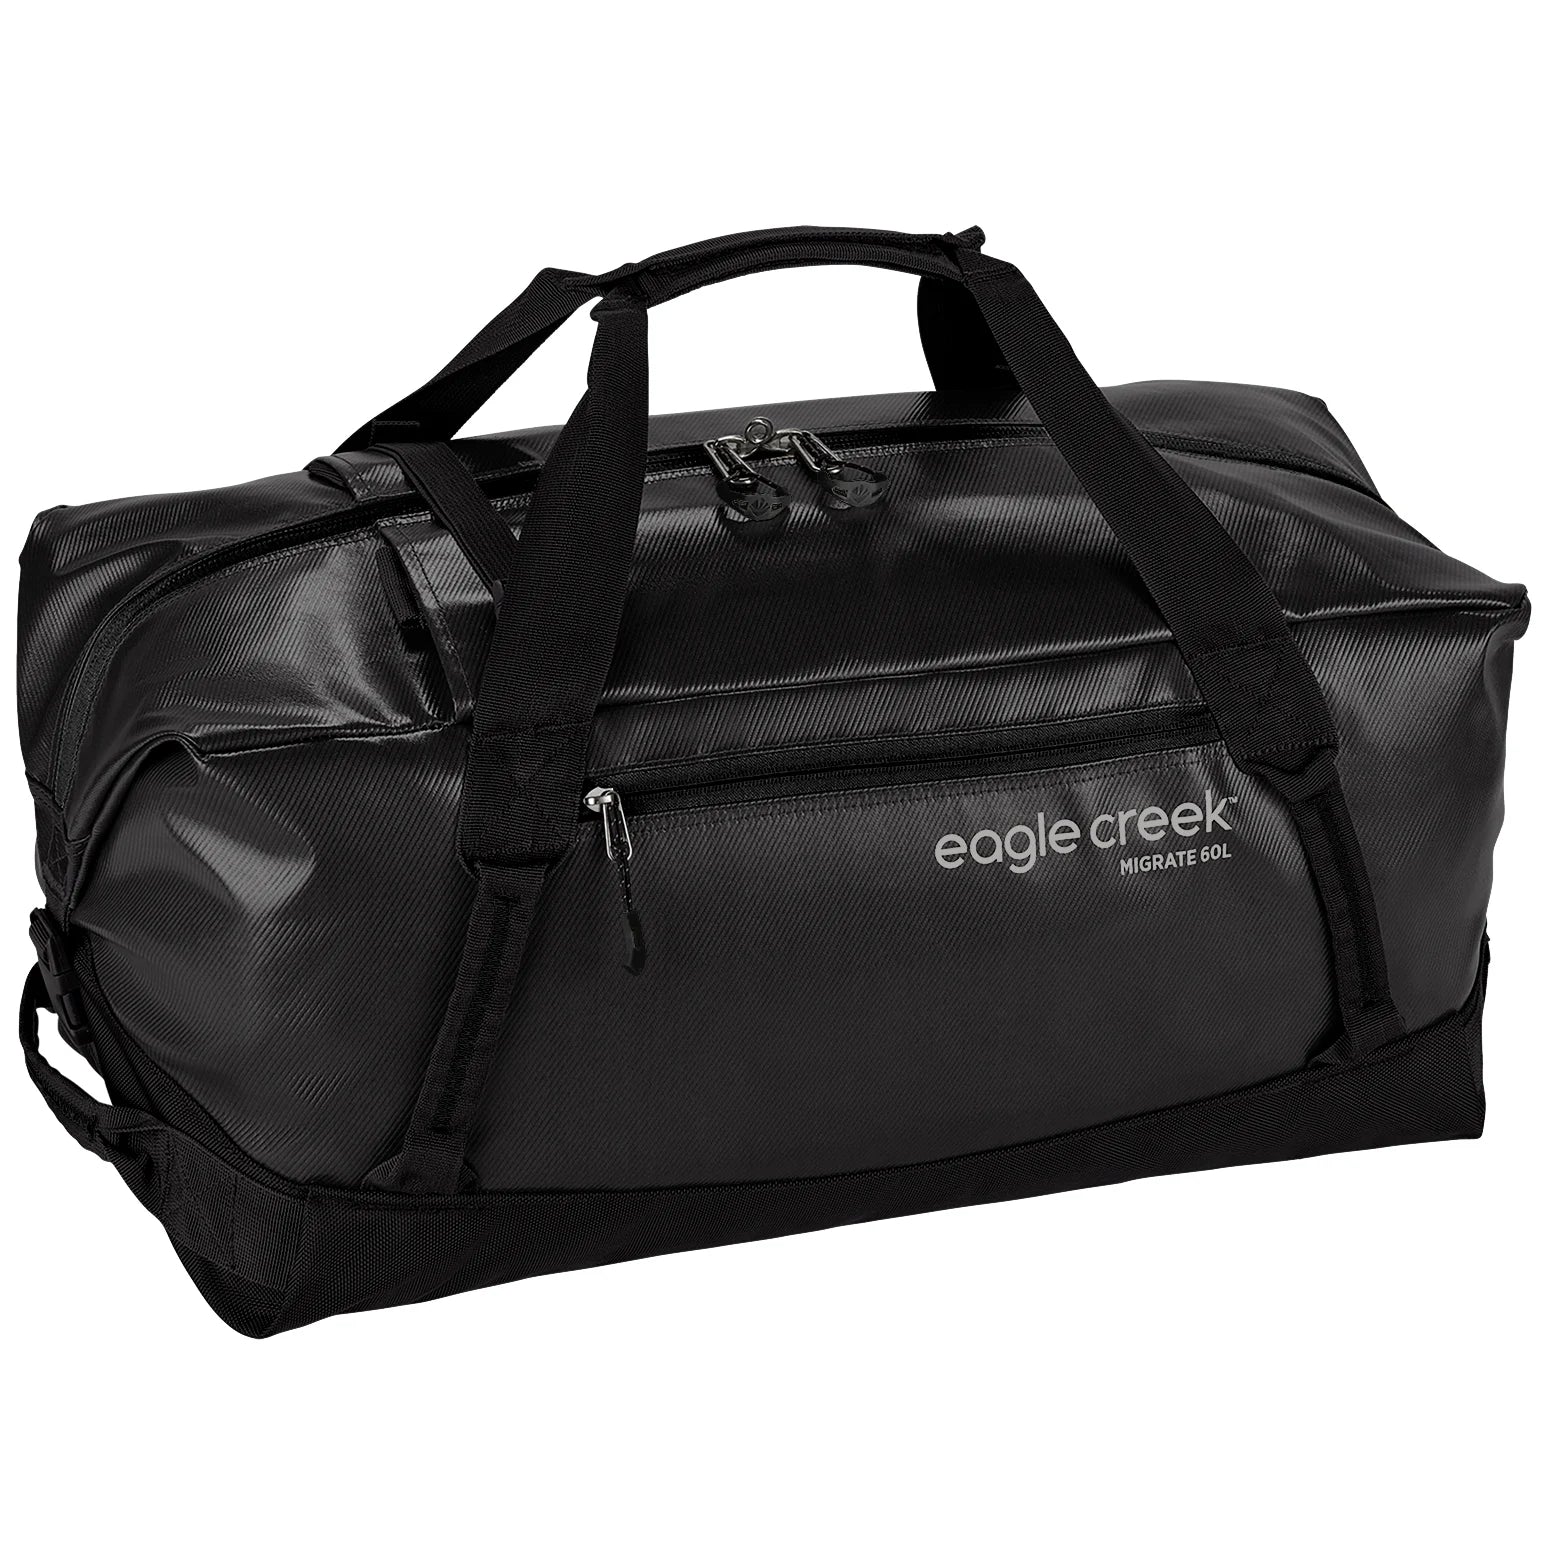 Eagle Creek Migrate Travel Bag 59 cm - black